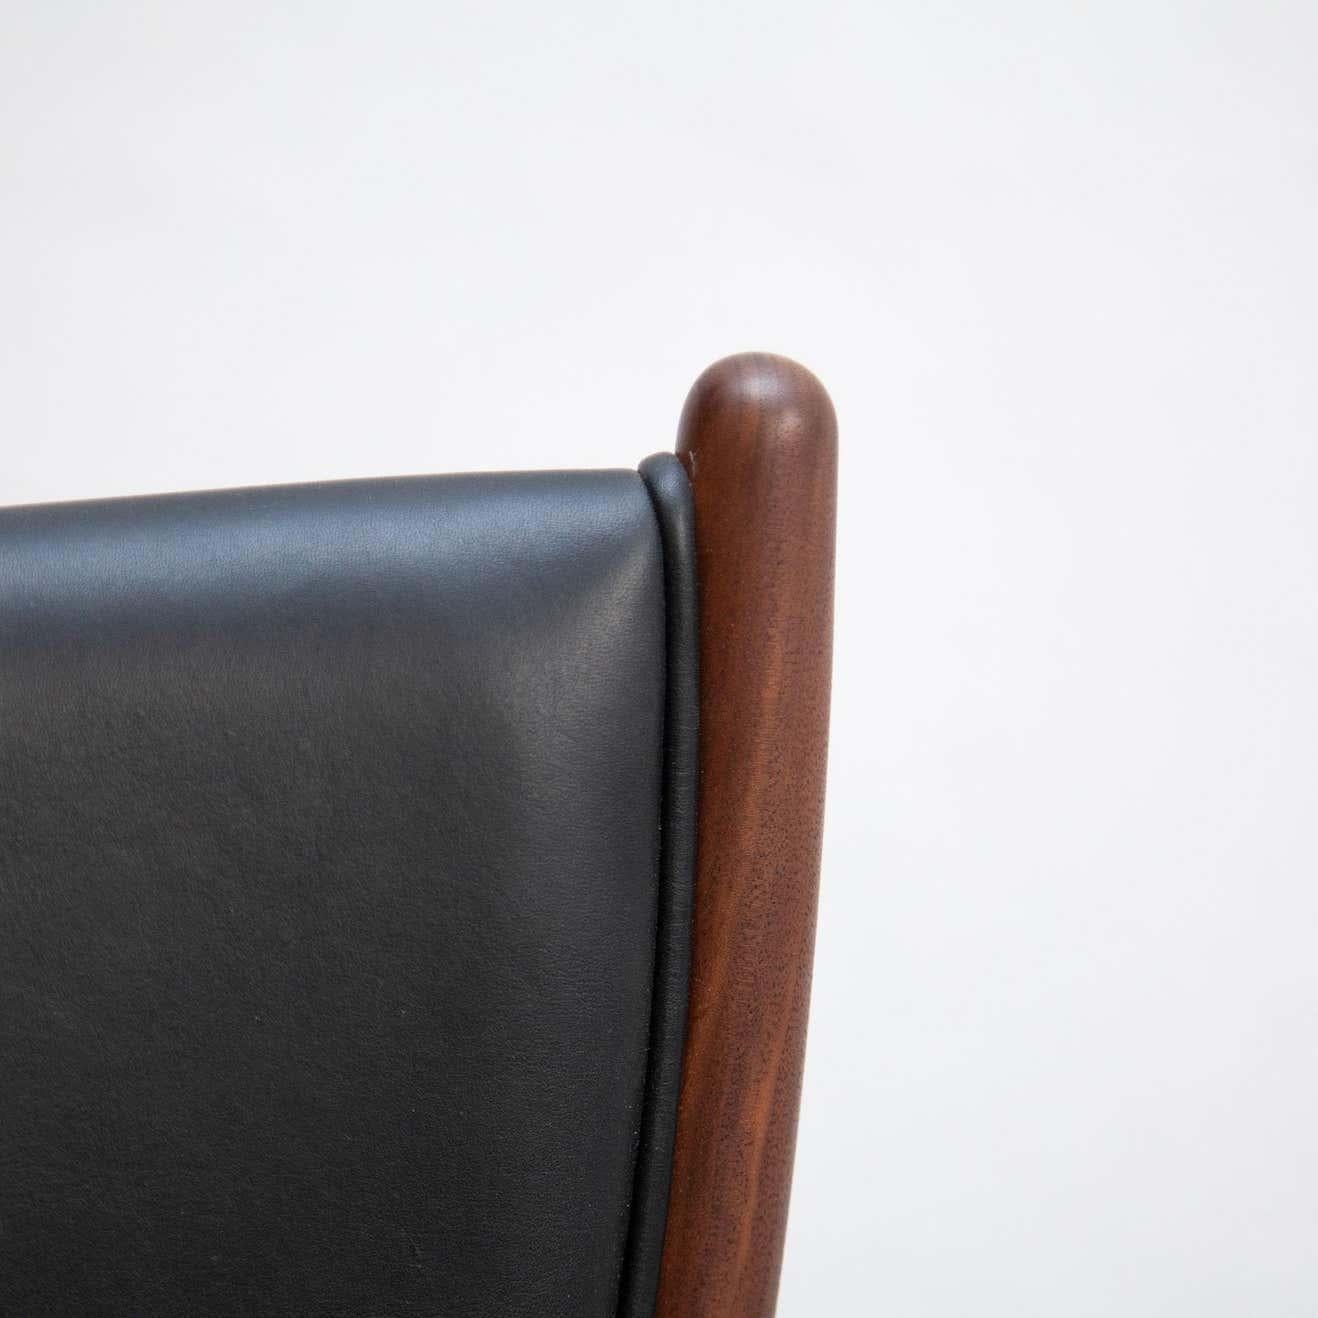 Finn Juhl Model 46 Armchair in Walnut and Black Leather by House of Finn Juhl For Sale 1